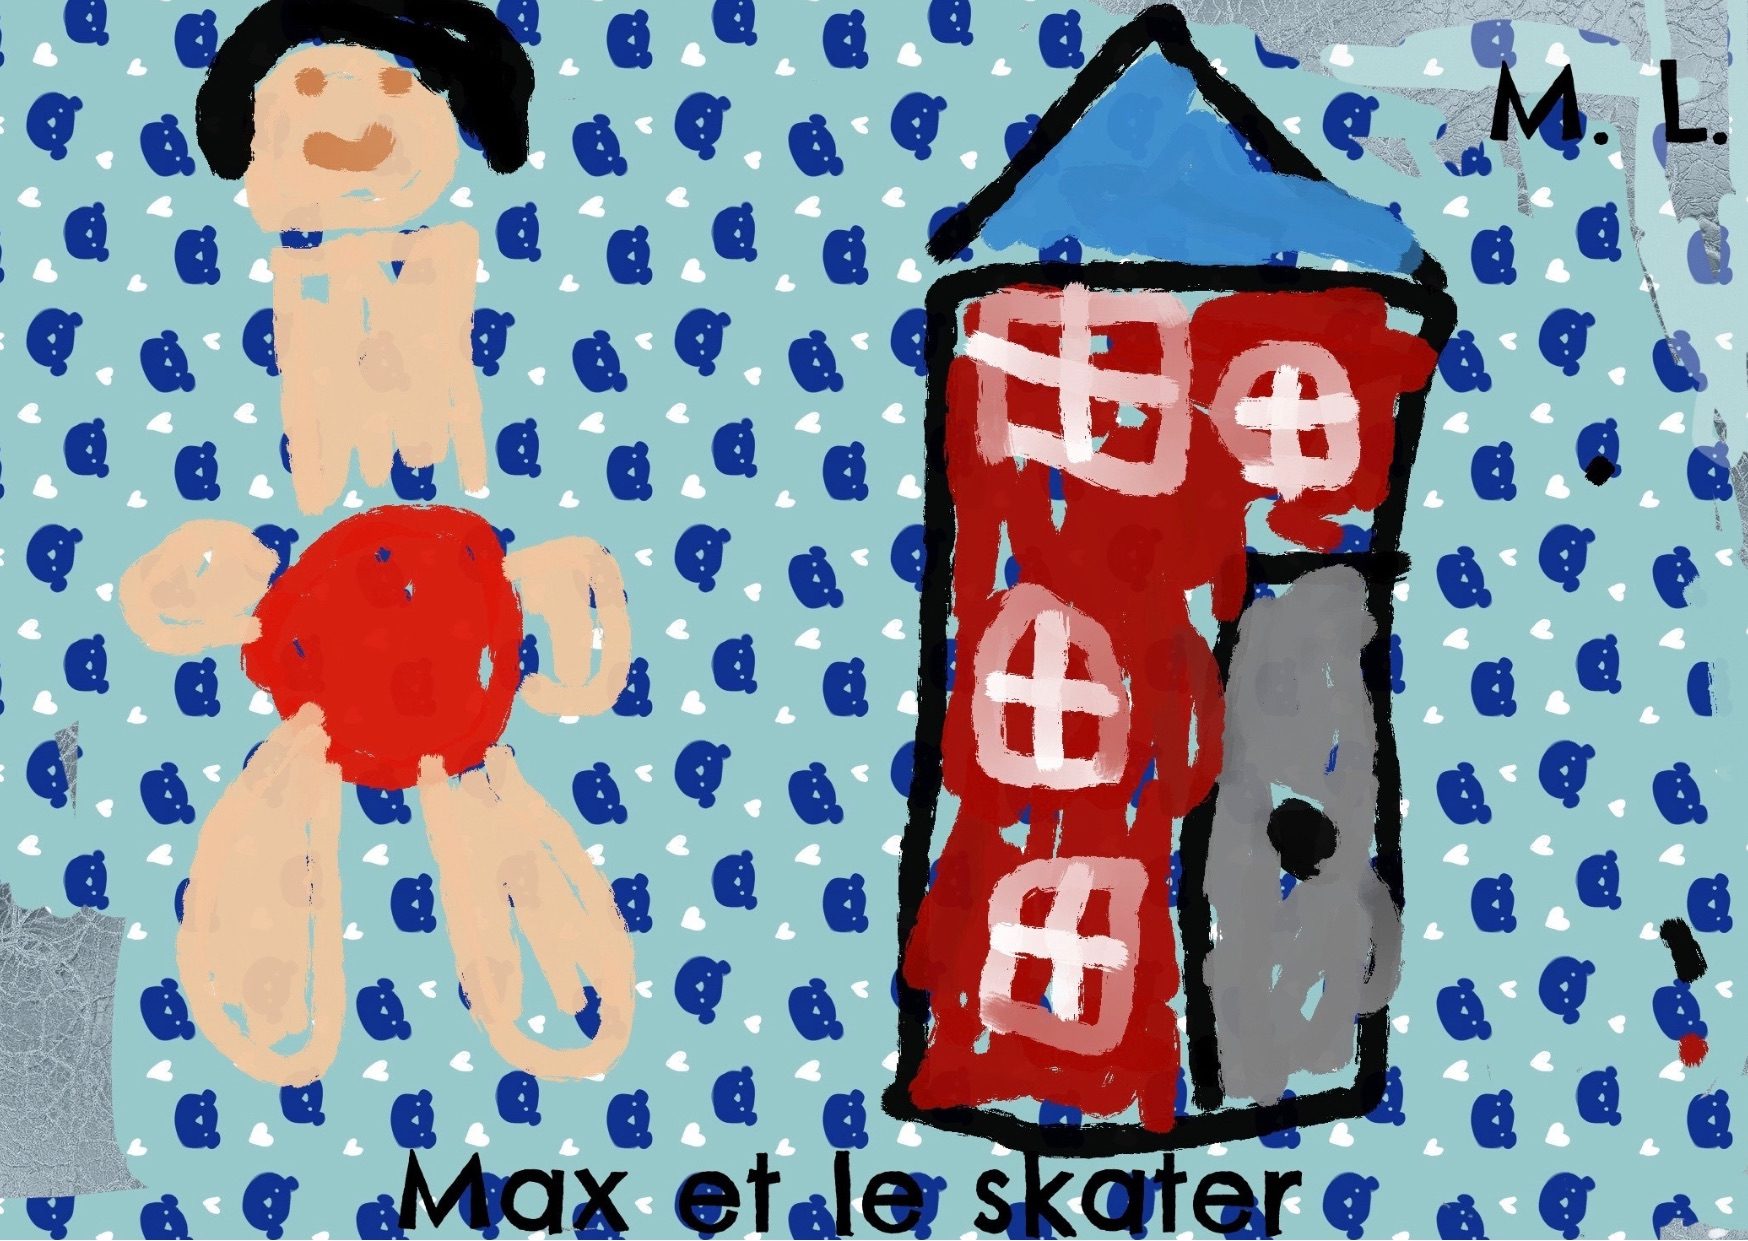 Max et le skater